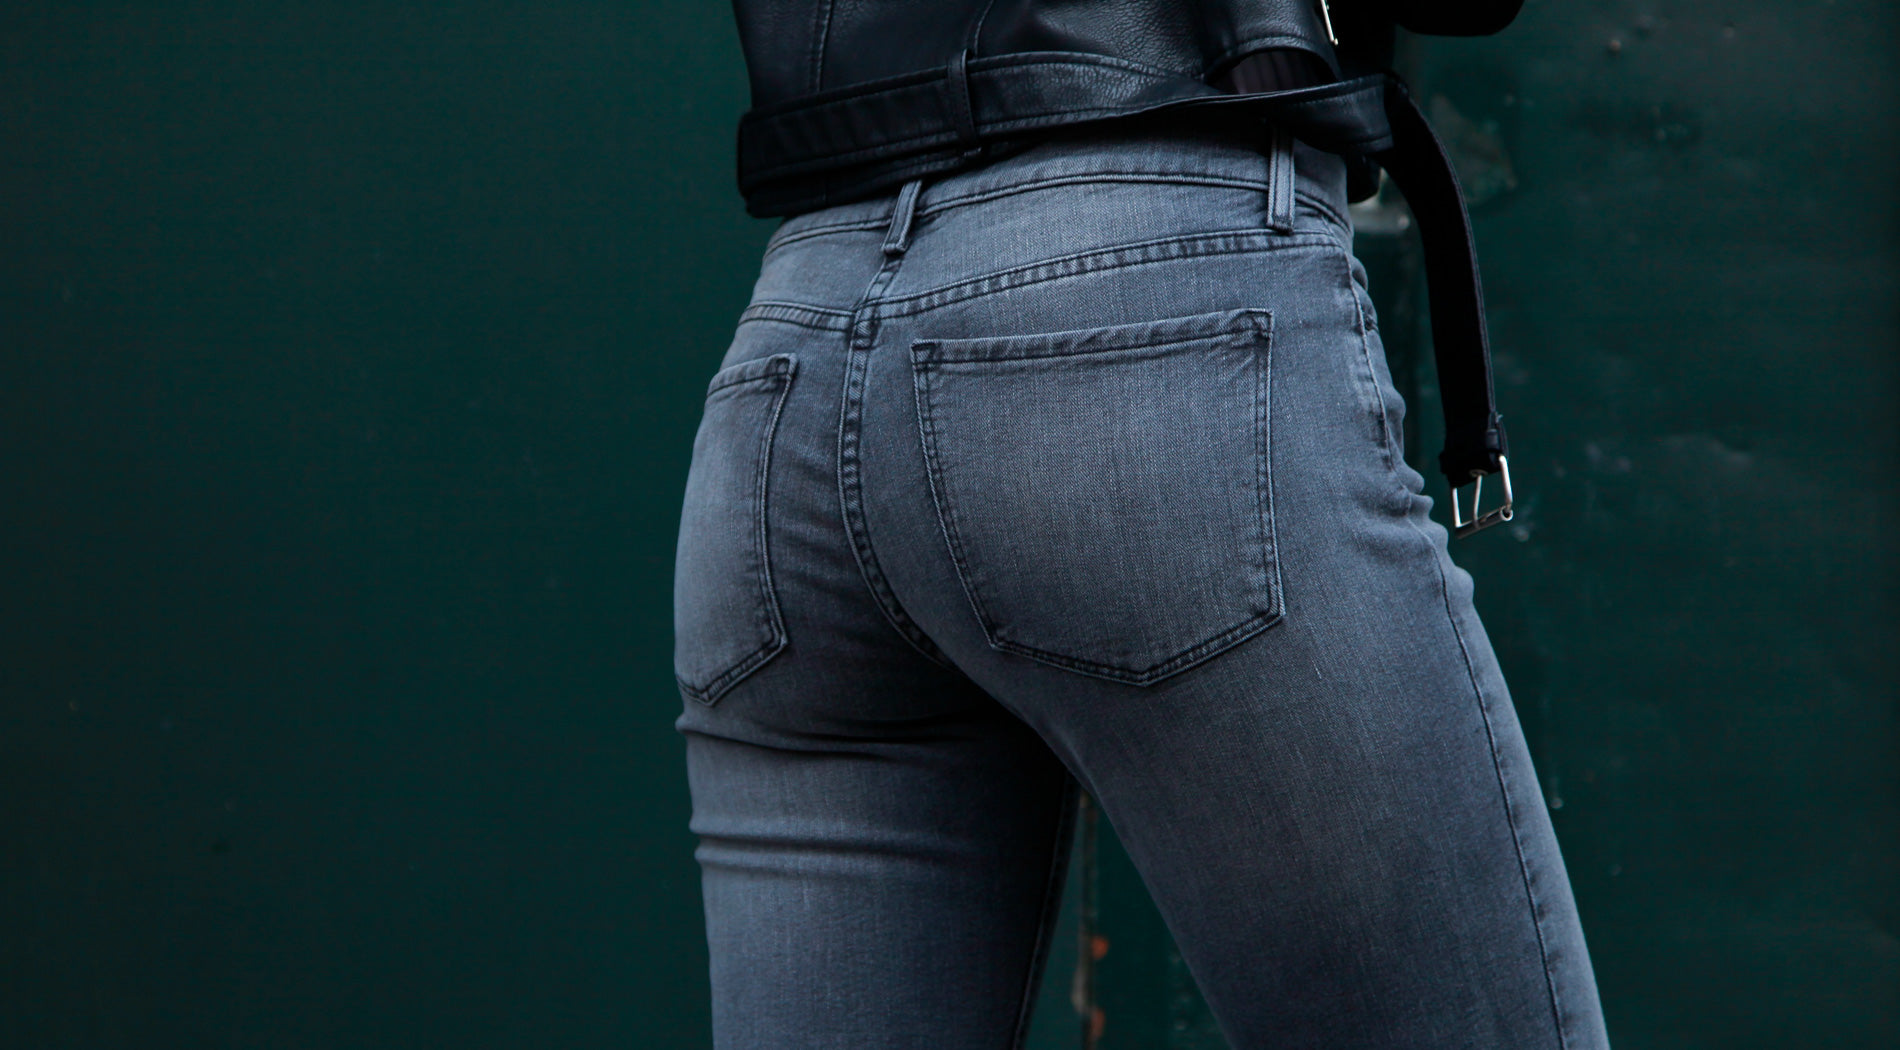 Jeans Fit Guide for Women - Custom Denim for Women